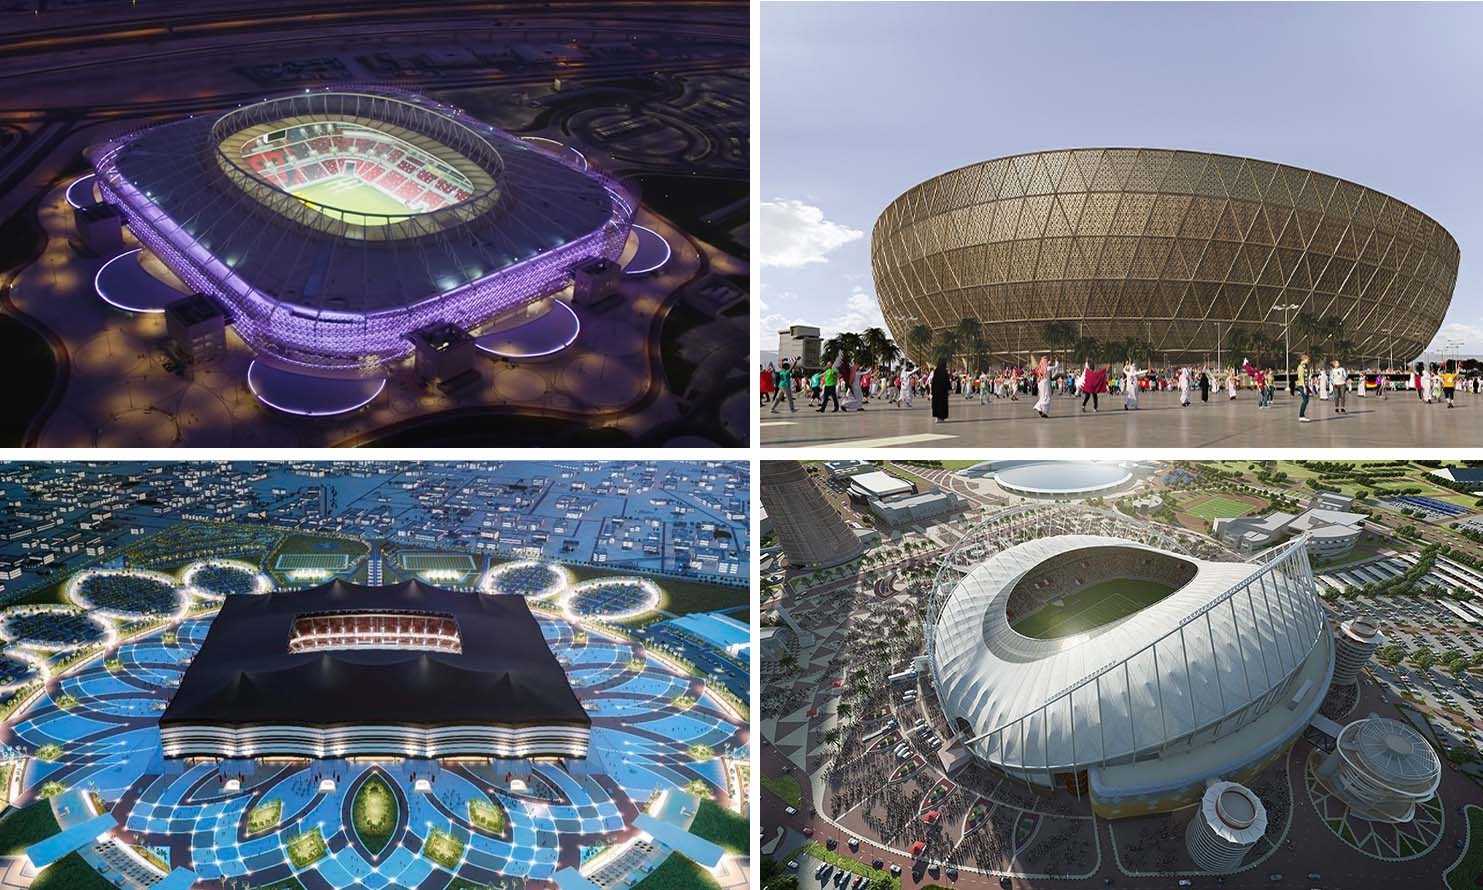 Tham gia chuyến du lịch với worl cup 2022 giá trăm triệu tại Qatar bạn sẽ có được những gì